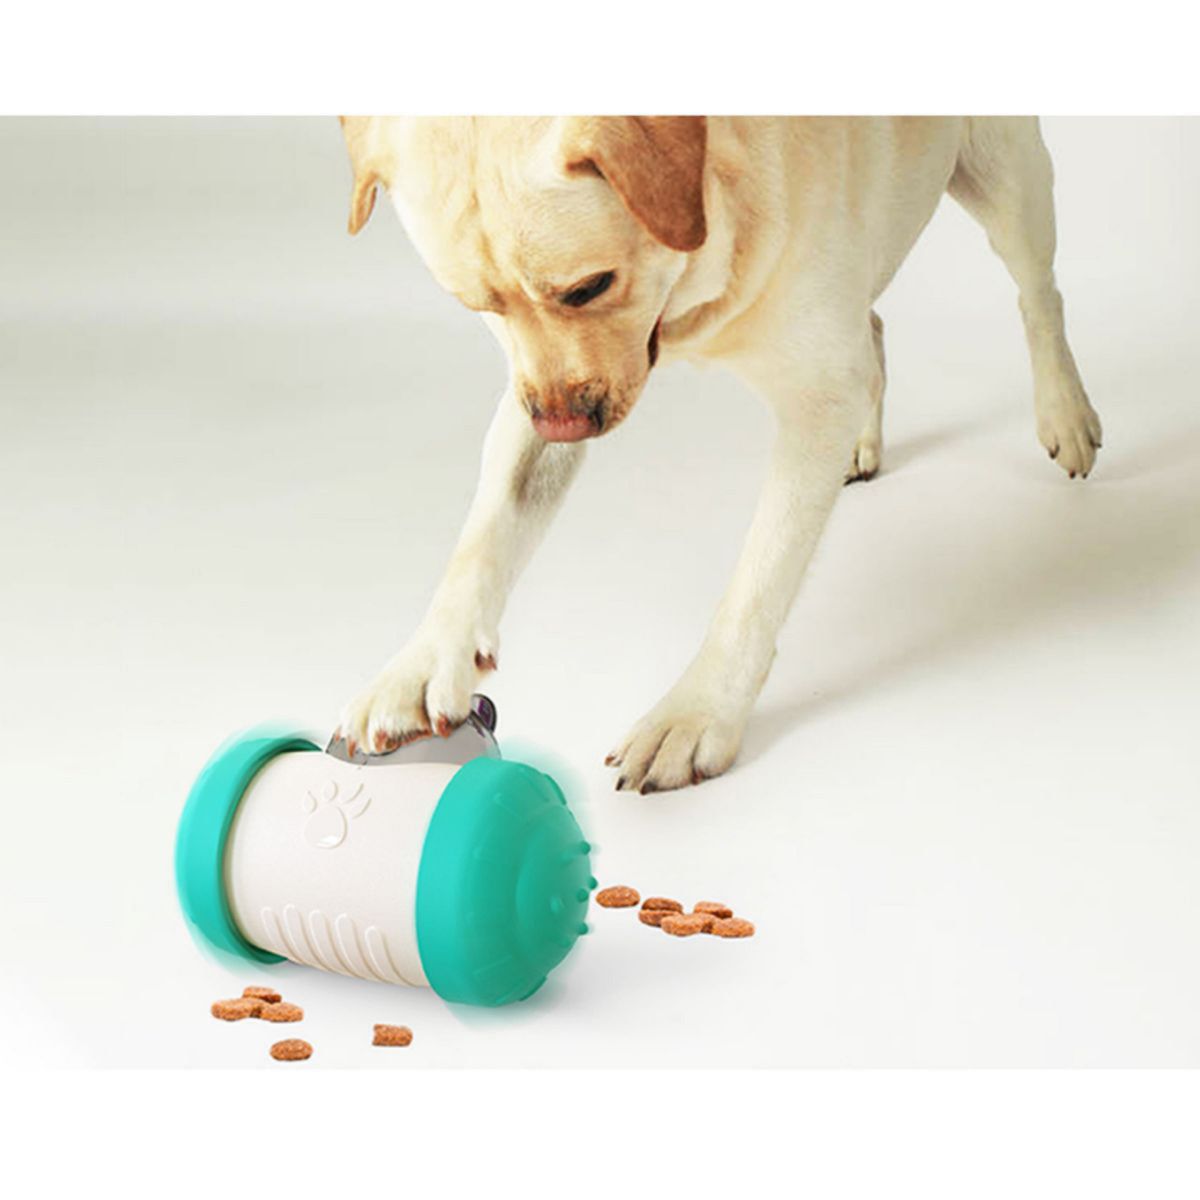 【グリーン】ペット おもちゃ おやつローラー 給餌玩具 知育玩具 早食い防止 運動不足解消 犬 猫 回転